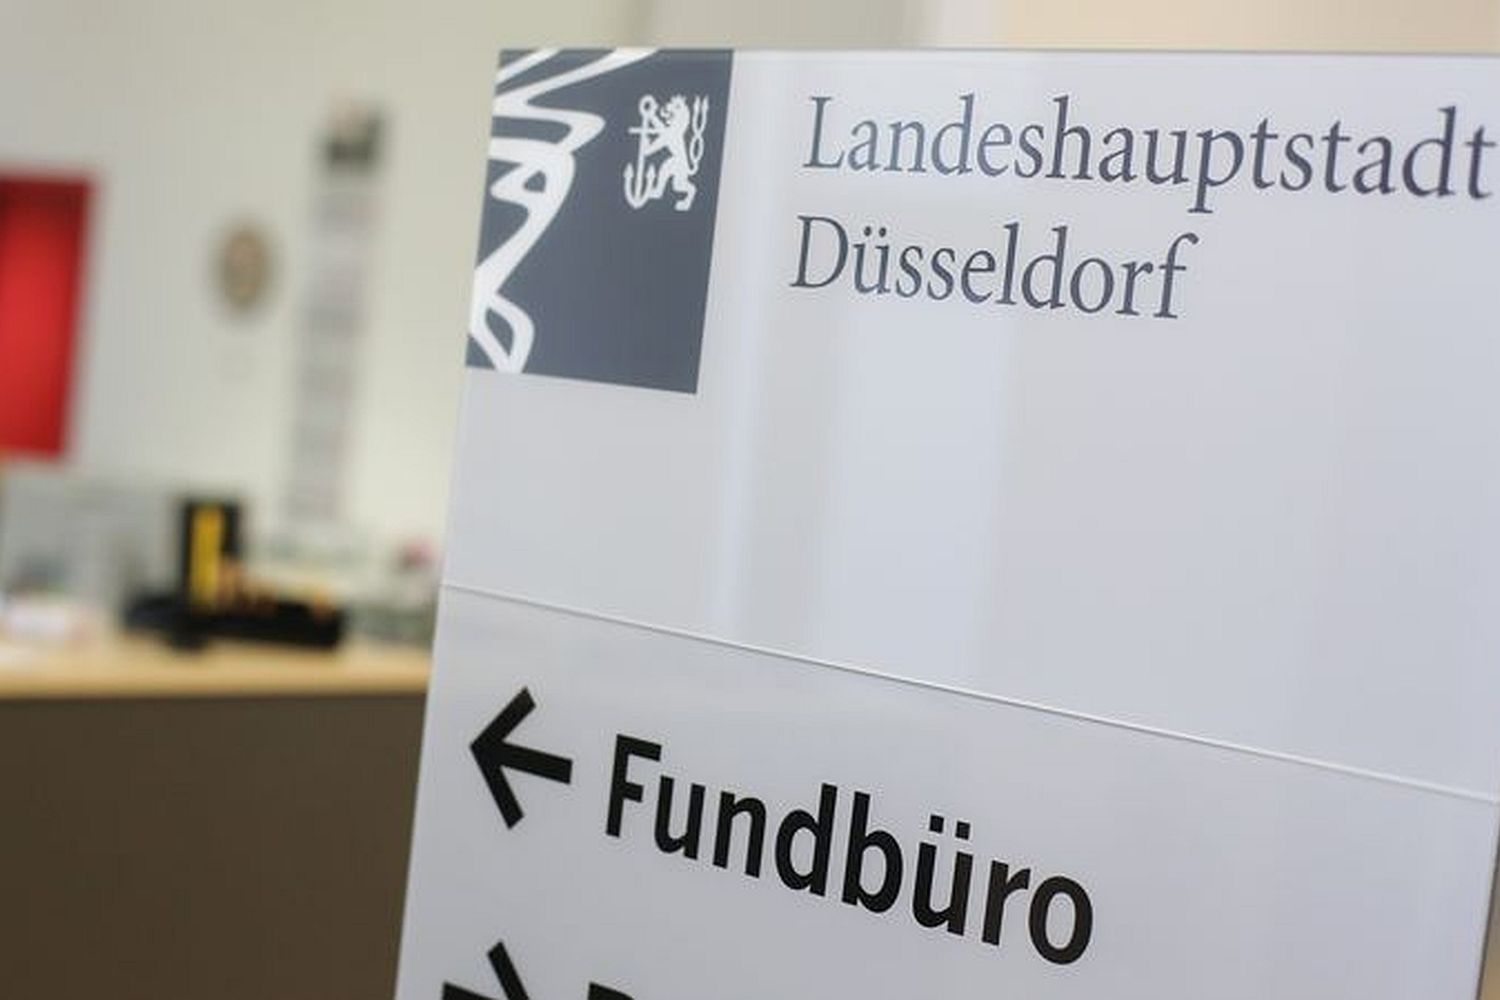 Düsseldorf: pérdida de propiedad en subastas de oficinas de orden público – Düsseldorf-Aktwell